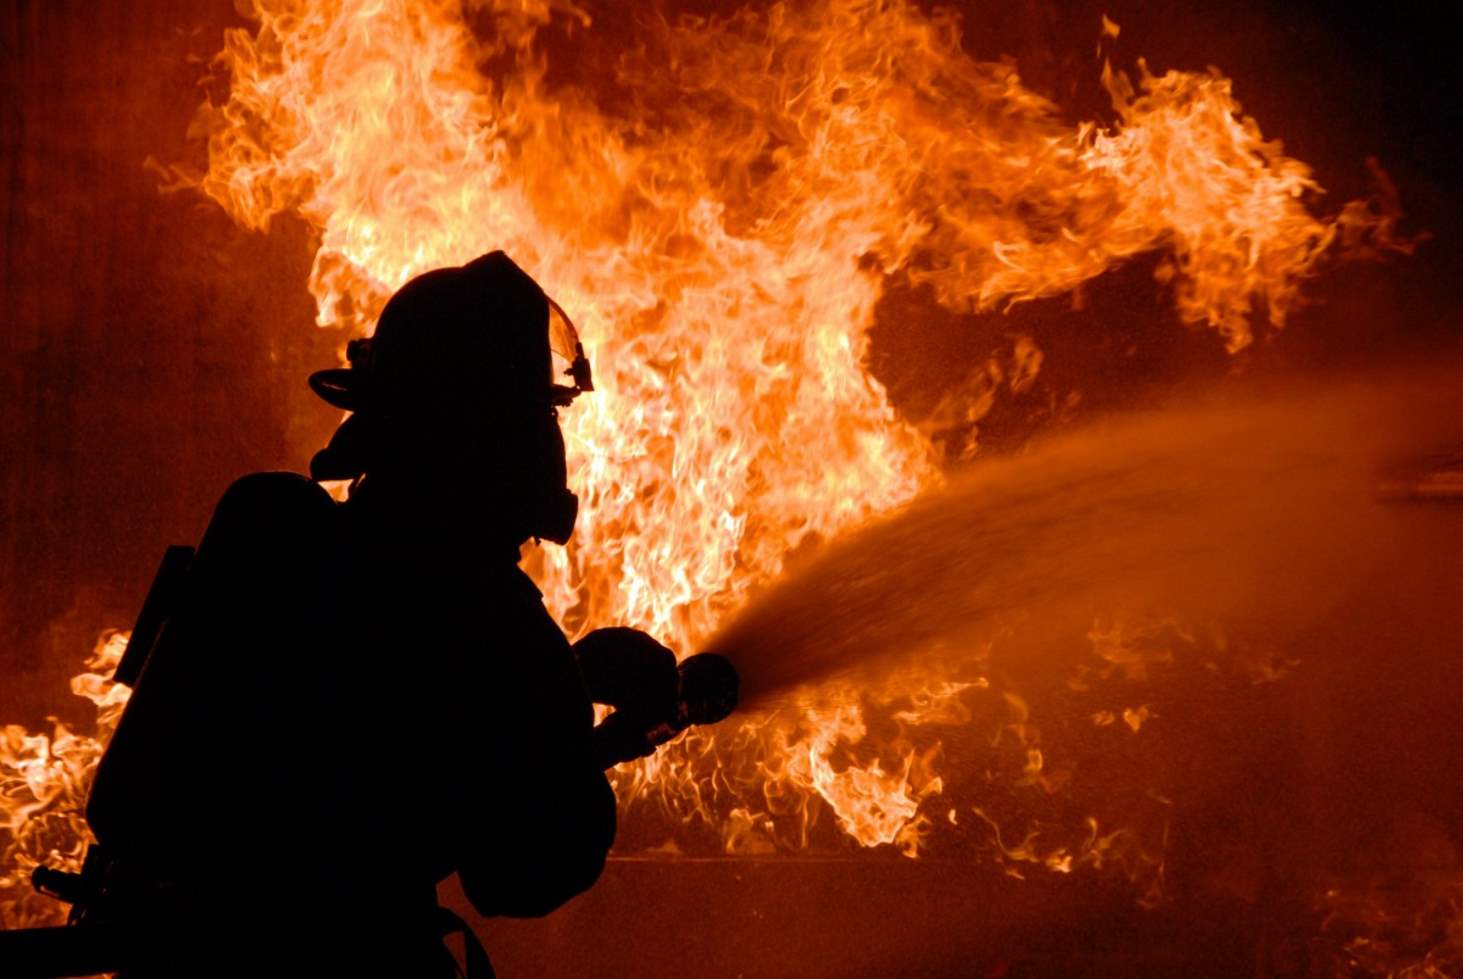 Как научить детей поведению при пожаре: тематический урок ОБЖ>